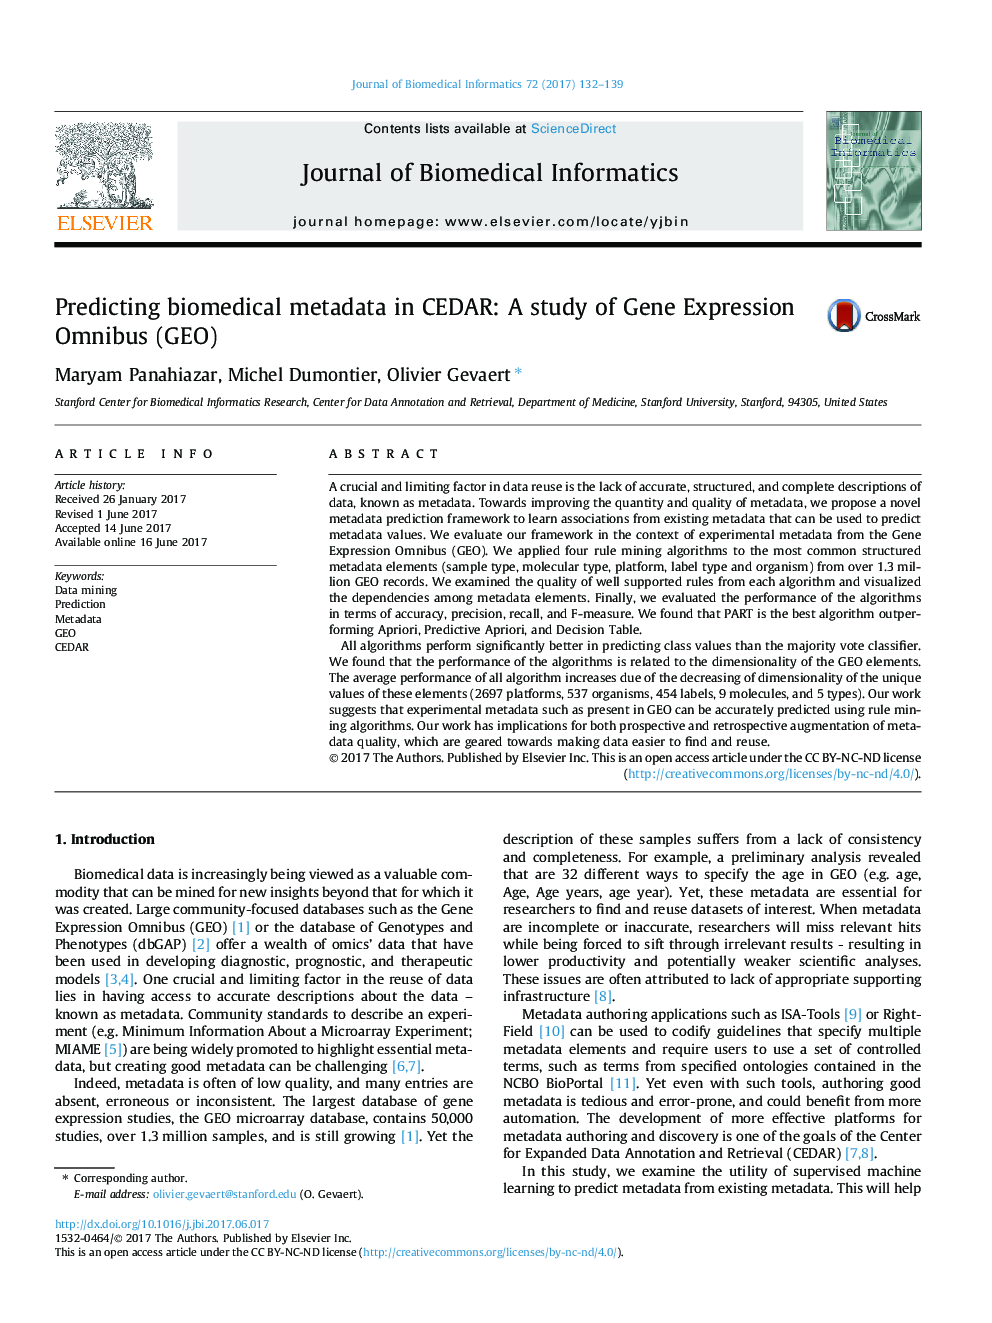 پیش بینی ابرداده های زیست پزشکی در CEDAR: مطالعه Omnibus Expression ژن (GEO)